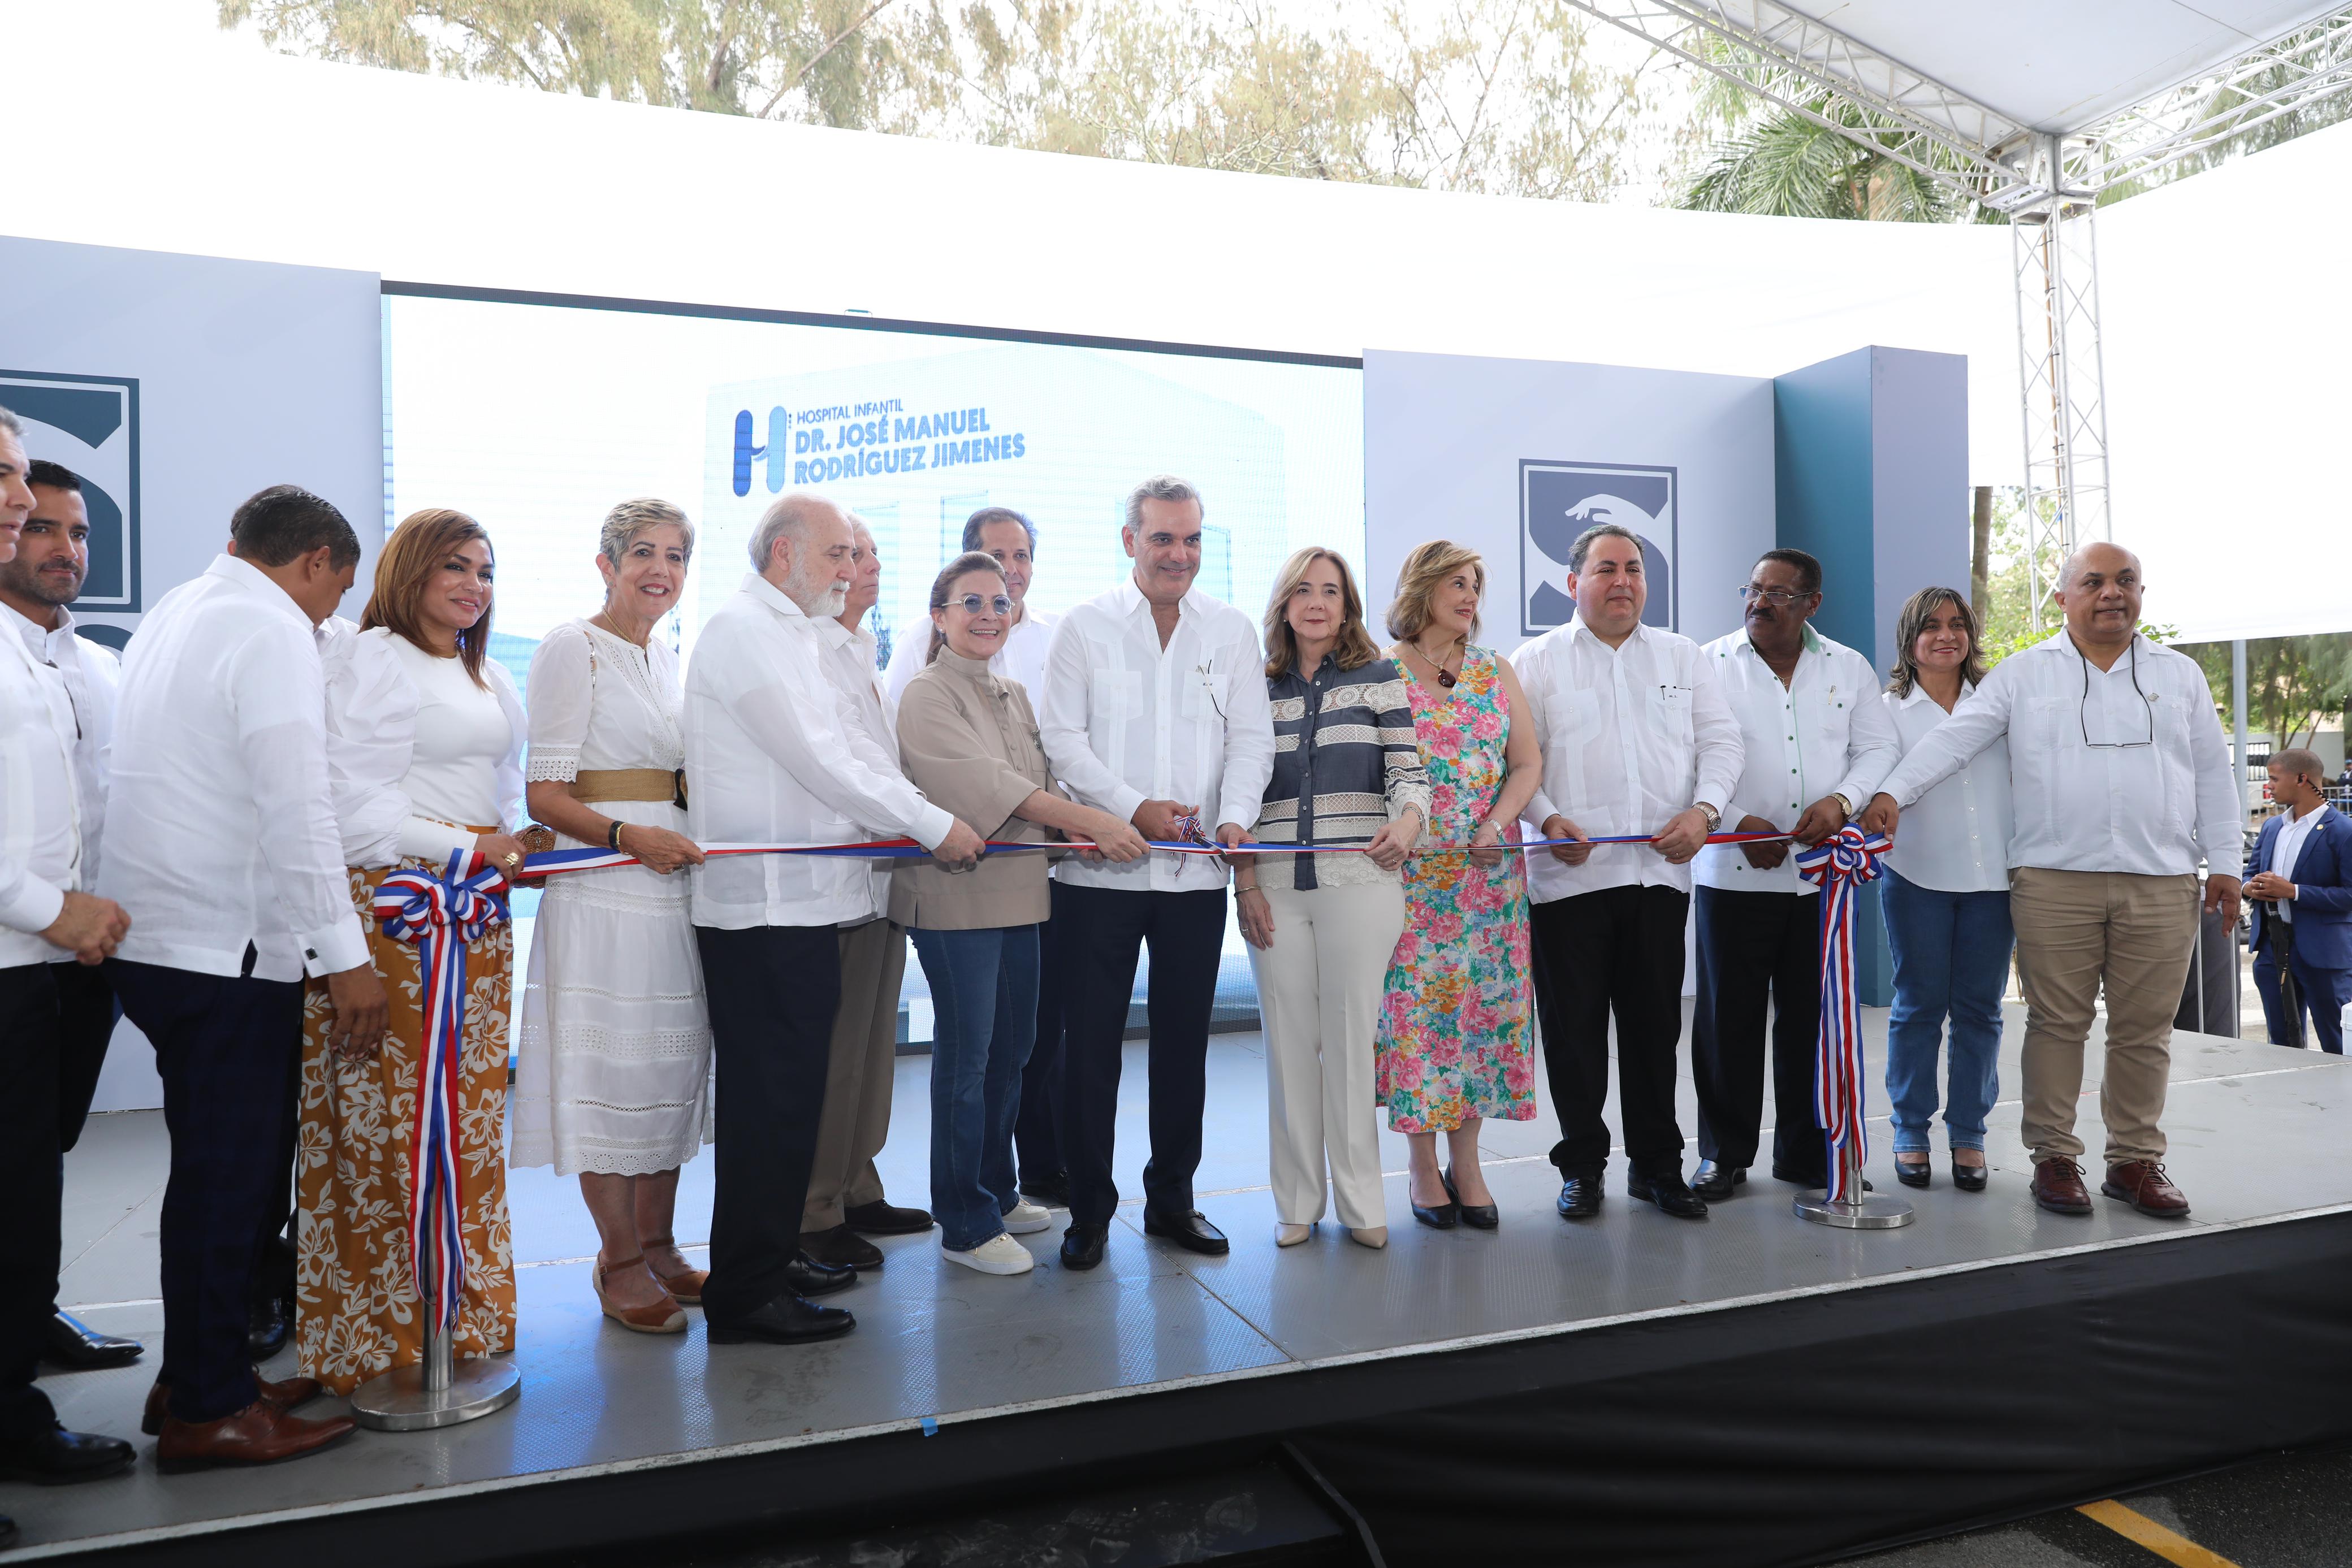 REPÚBLICA DOMINICANA: Presidente Abinader entrega remozado Hospital Infantil Dr. José Manuel Rodríguez Jimenes